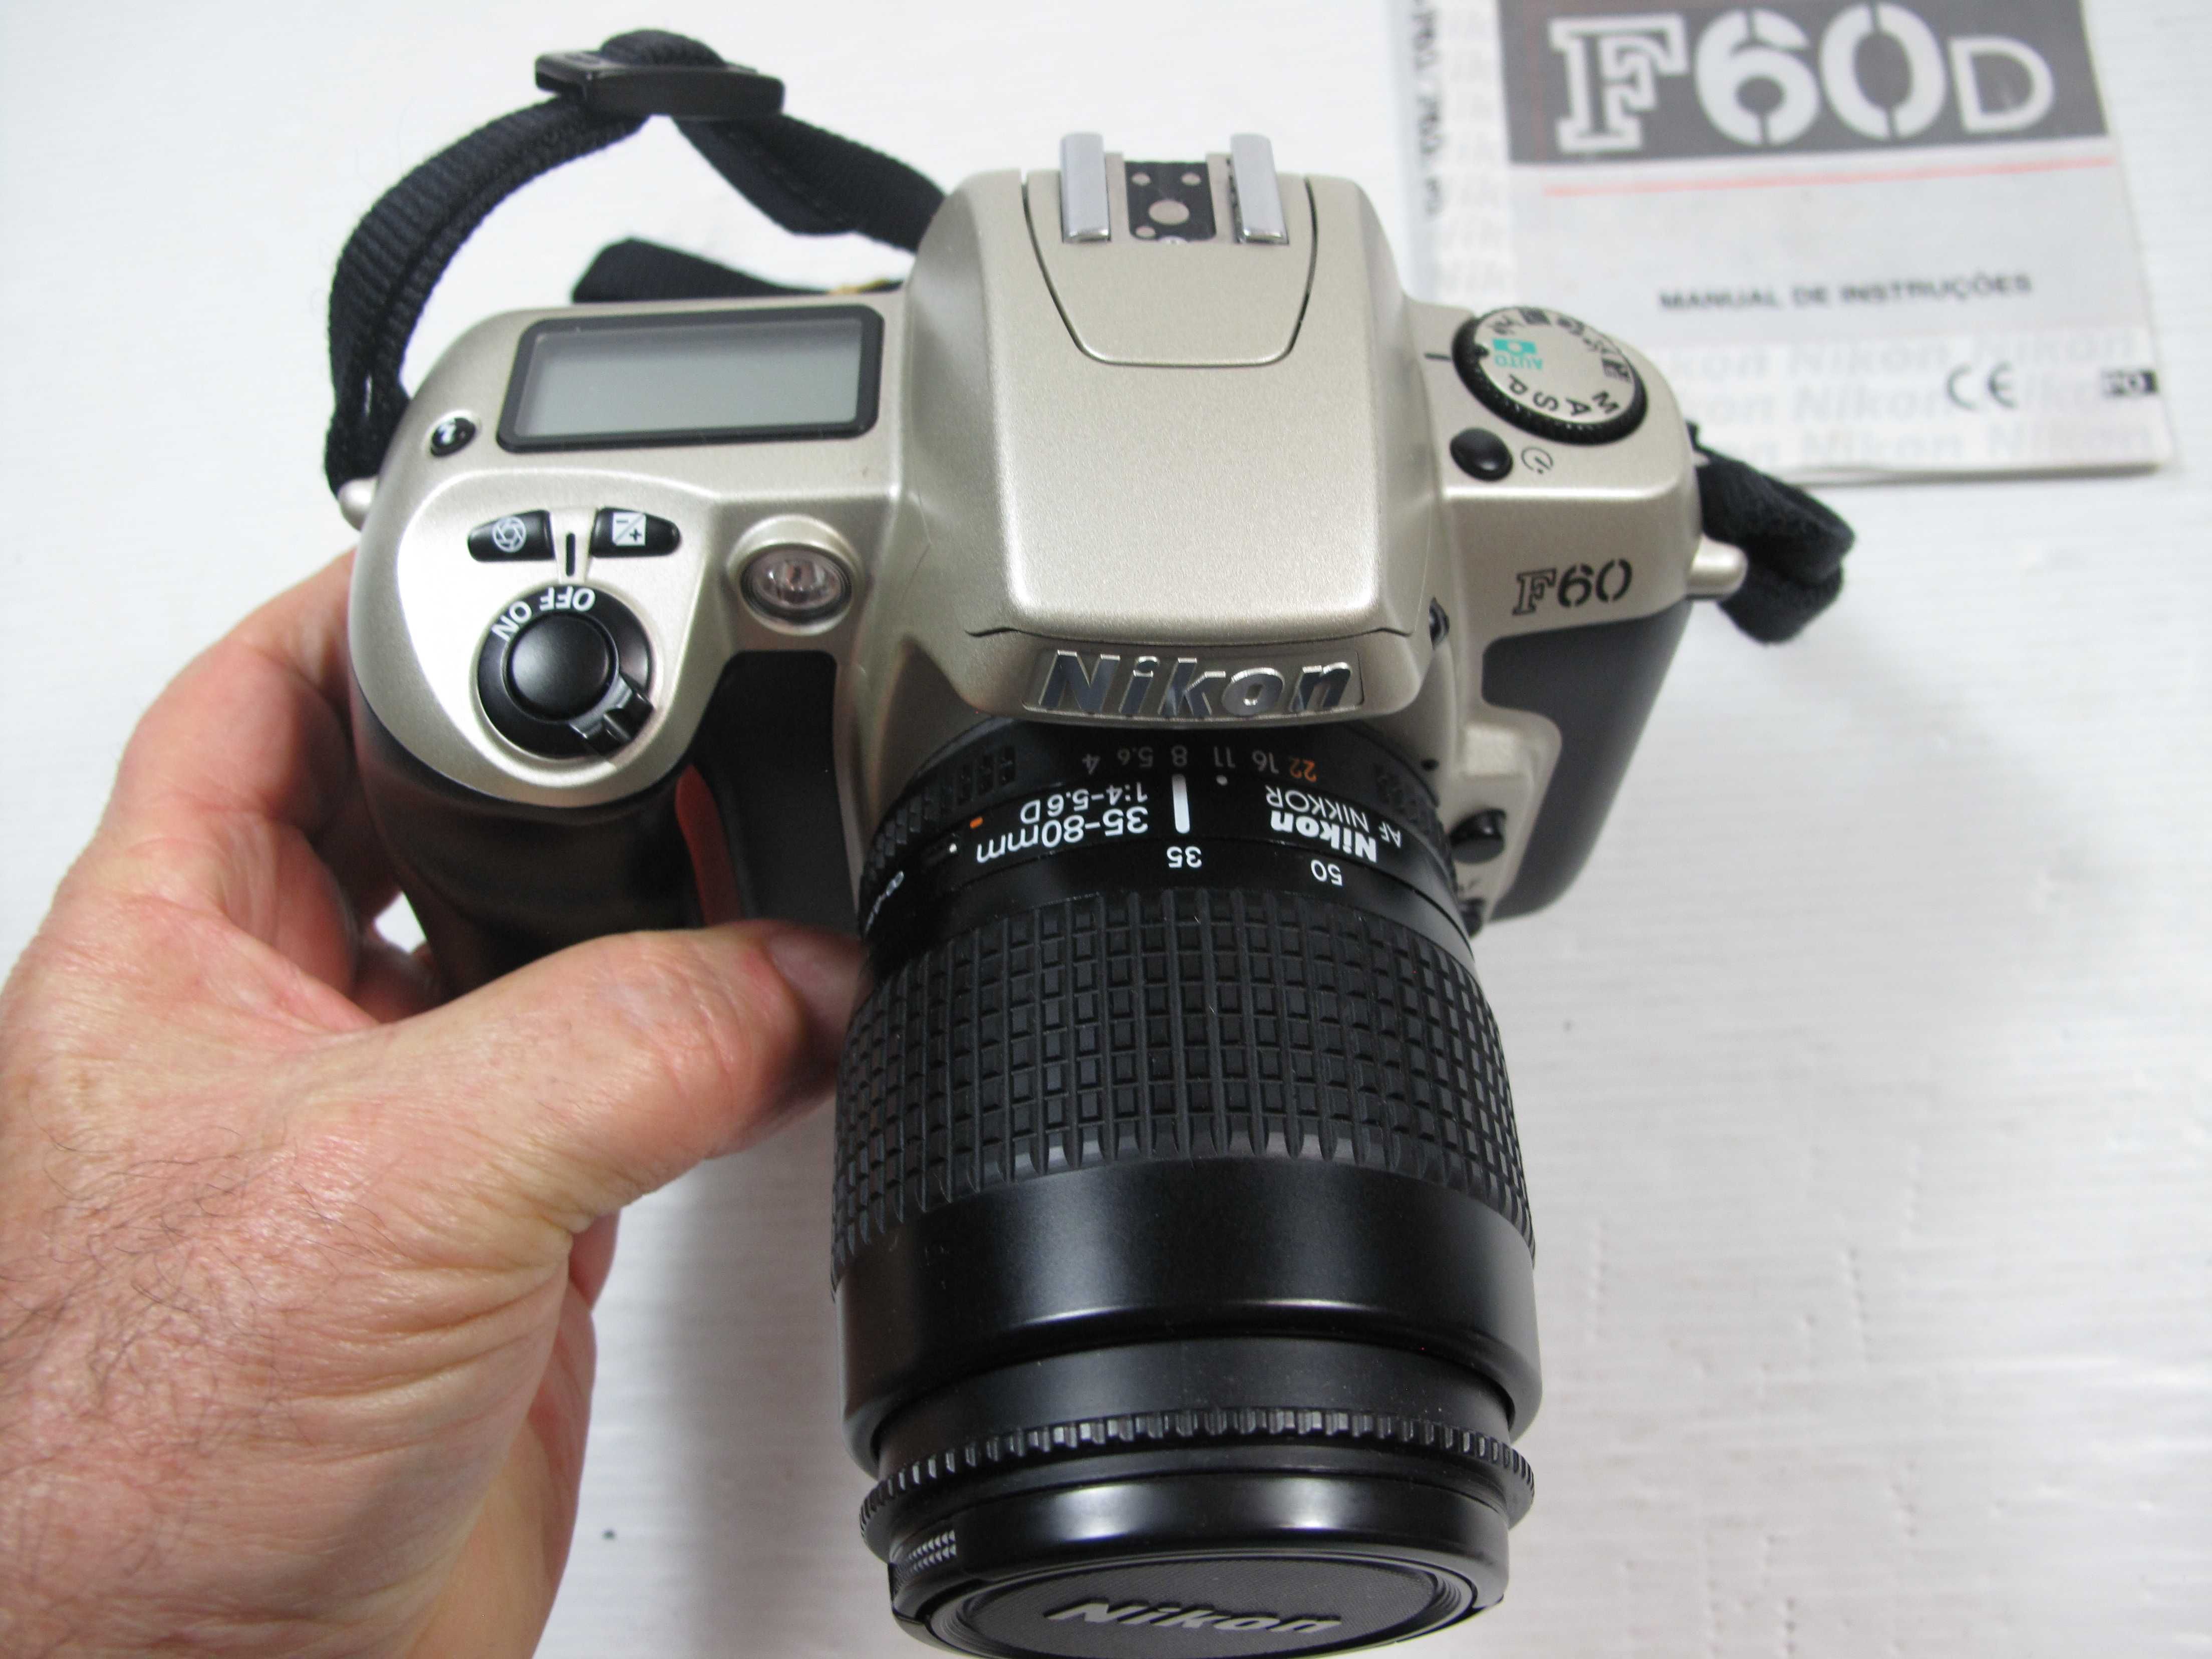 Nikon F60+35-80 excelente conforme conforme se pode ver nas fotos